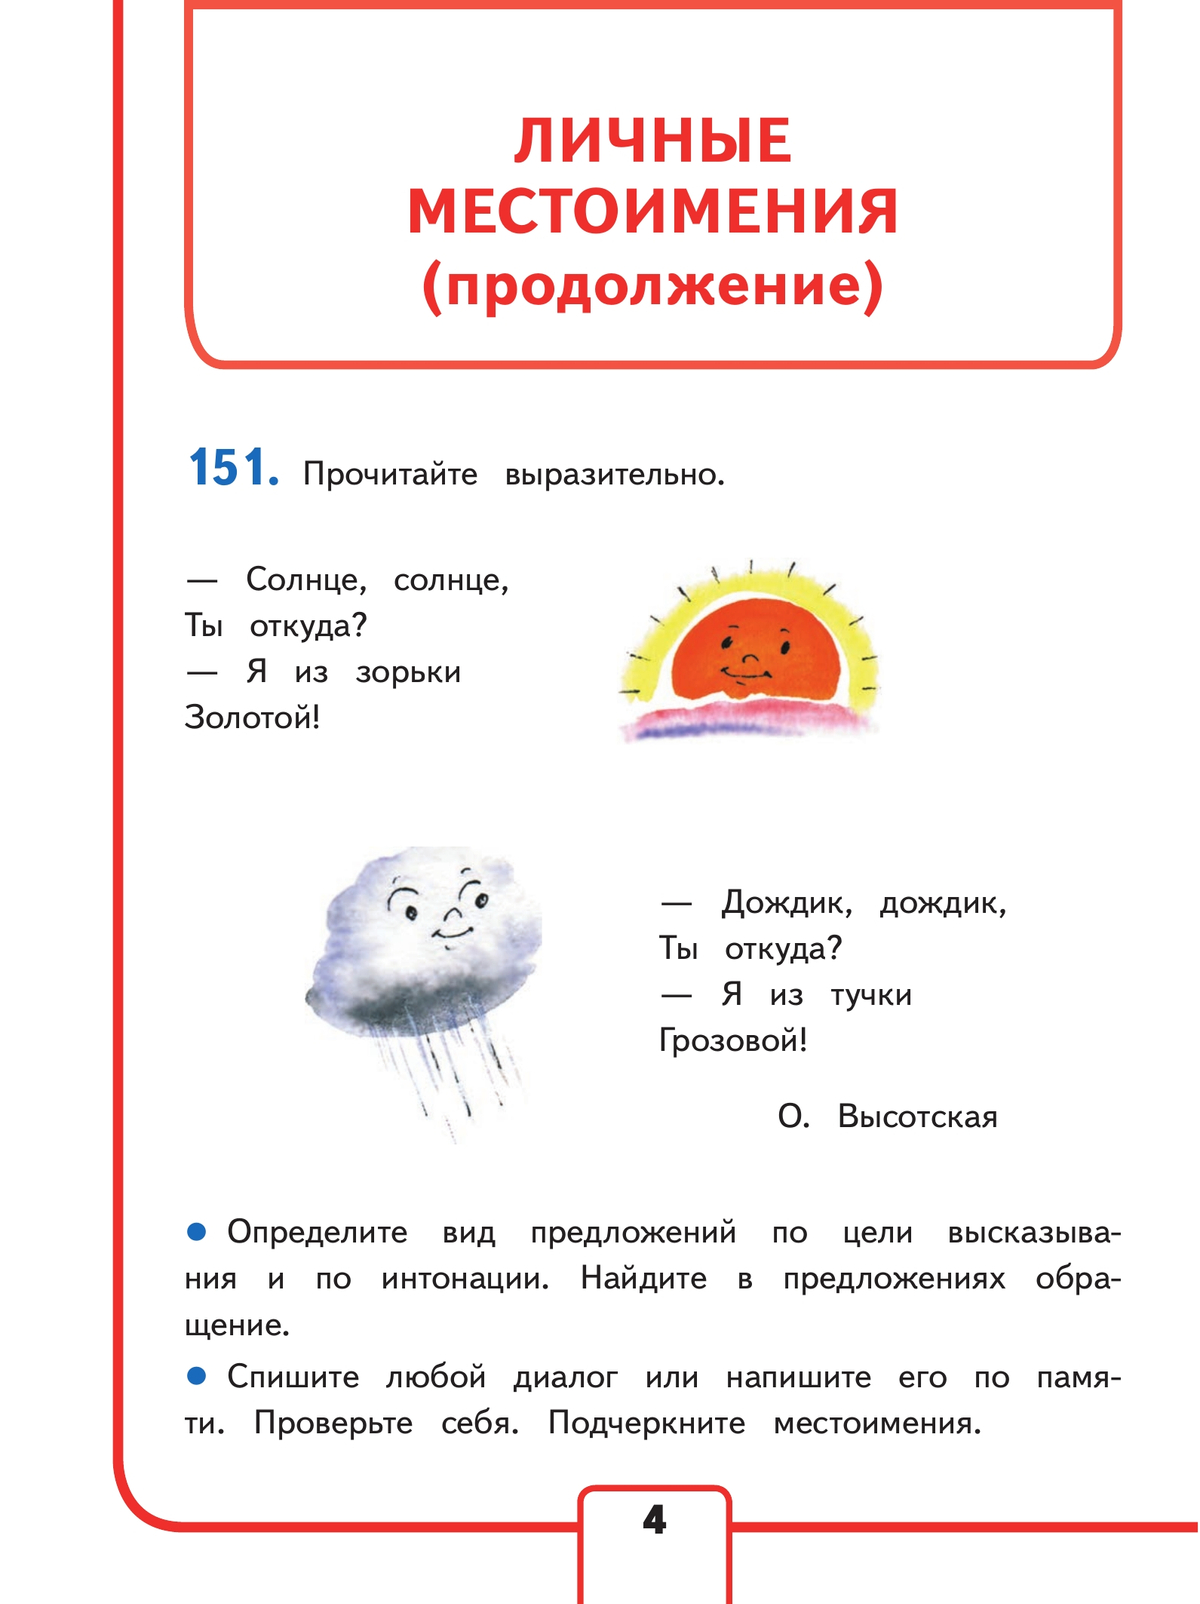 Русский язык. 3 класс. Учебное пособие. В 5 ч. Часть 5 (для слабовидящих обучающихся) 6